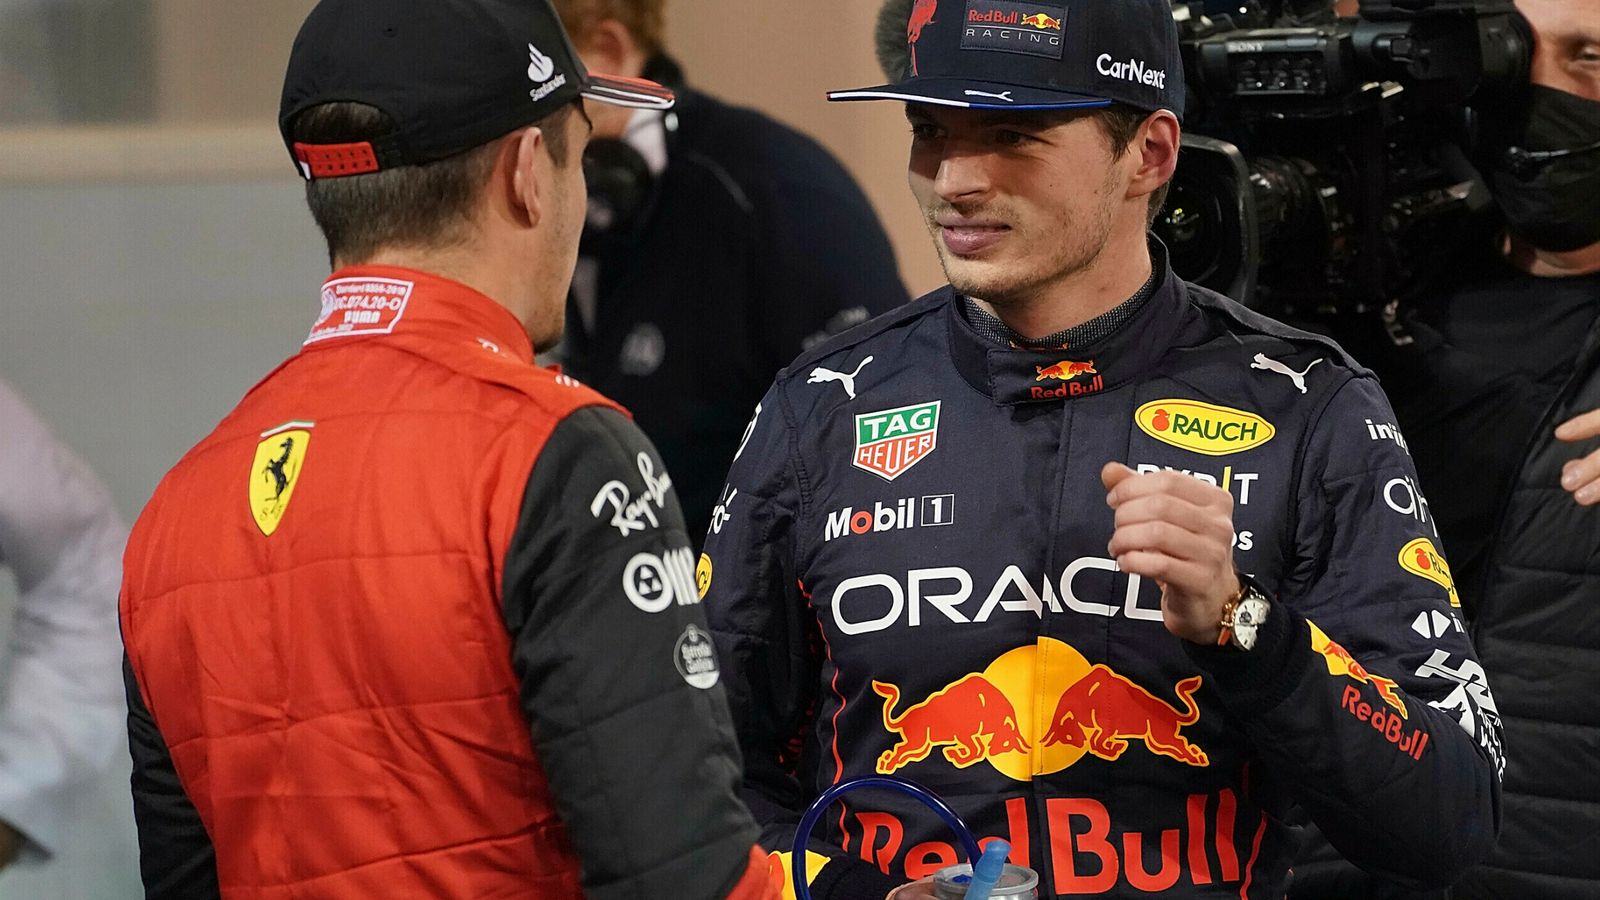 Гран-при Бахрейна: Феррари против Макса Ферстаппена возглавляет легендарный дебют Формулы-1, поскольку Льюис Хэмилтон стремится «продержаться»